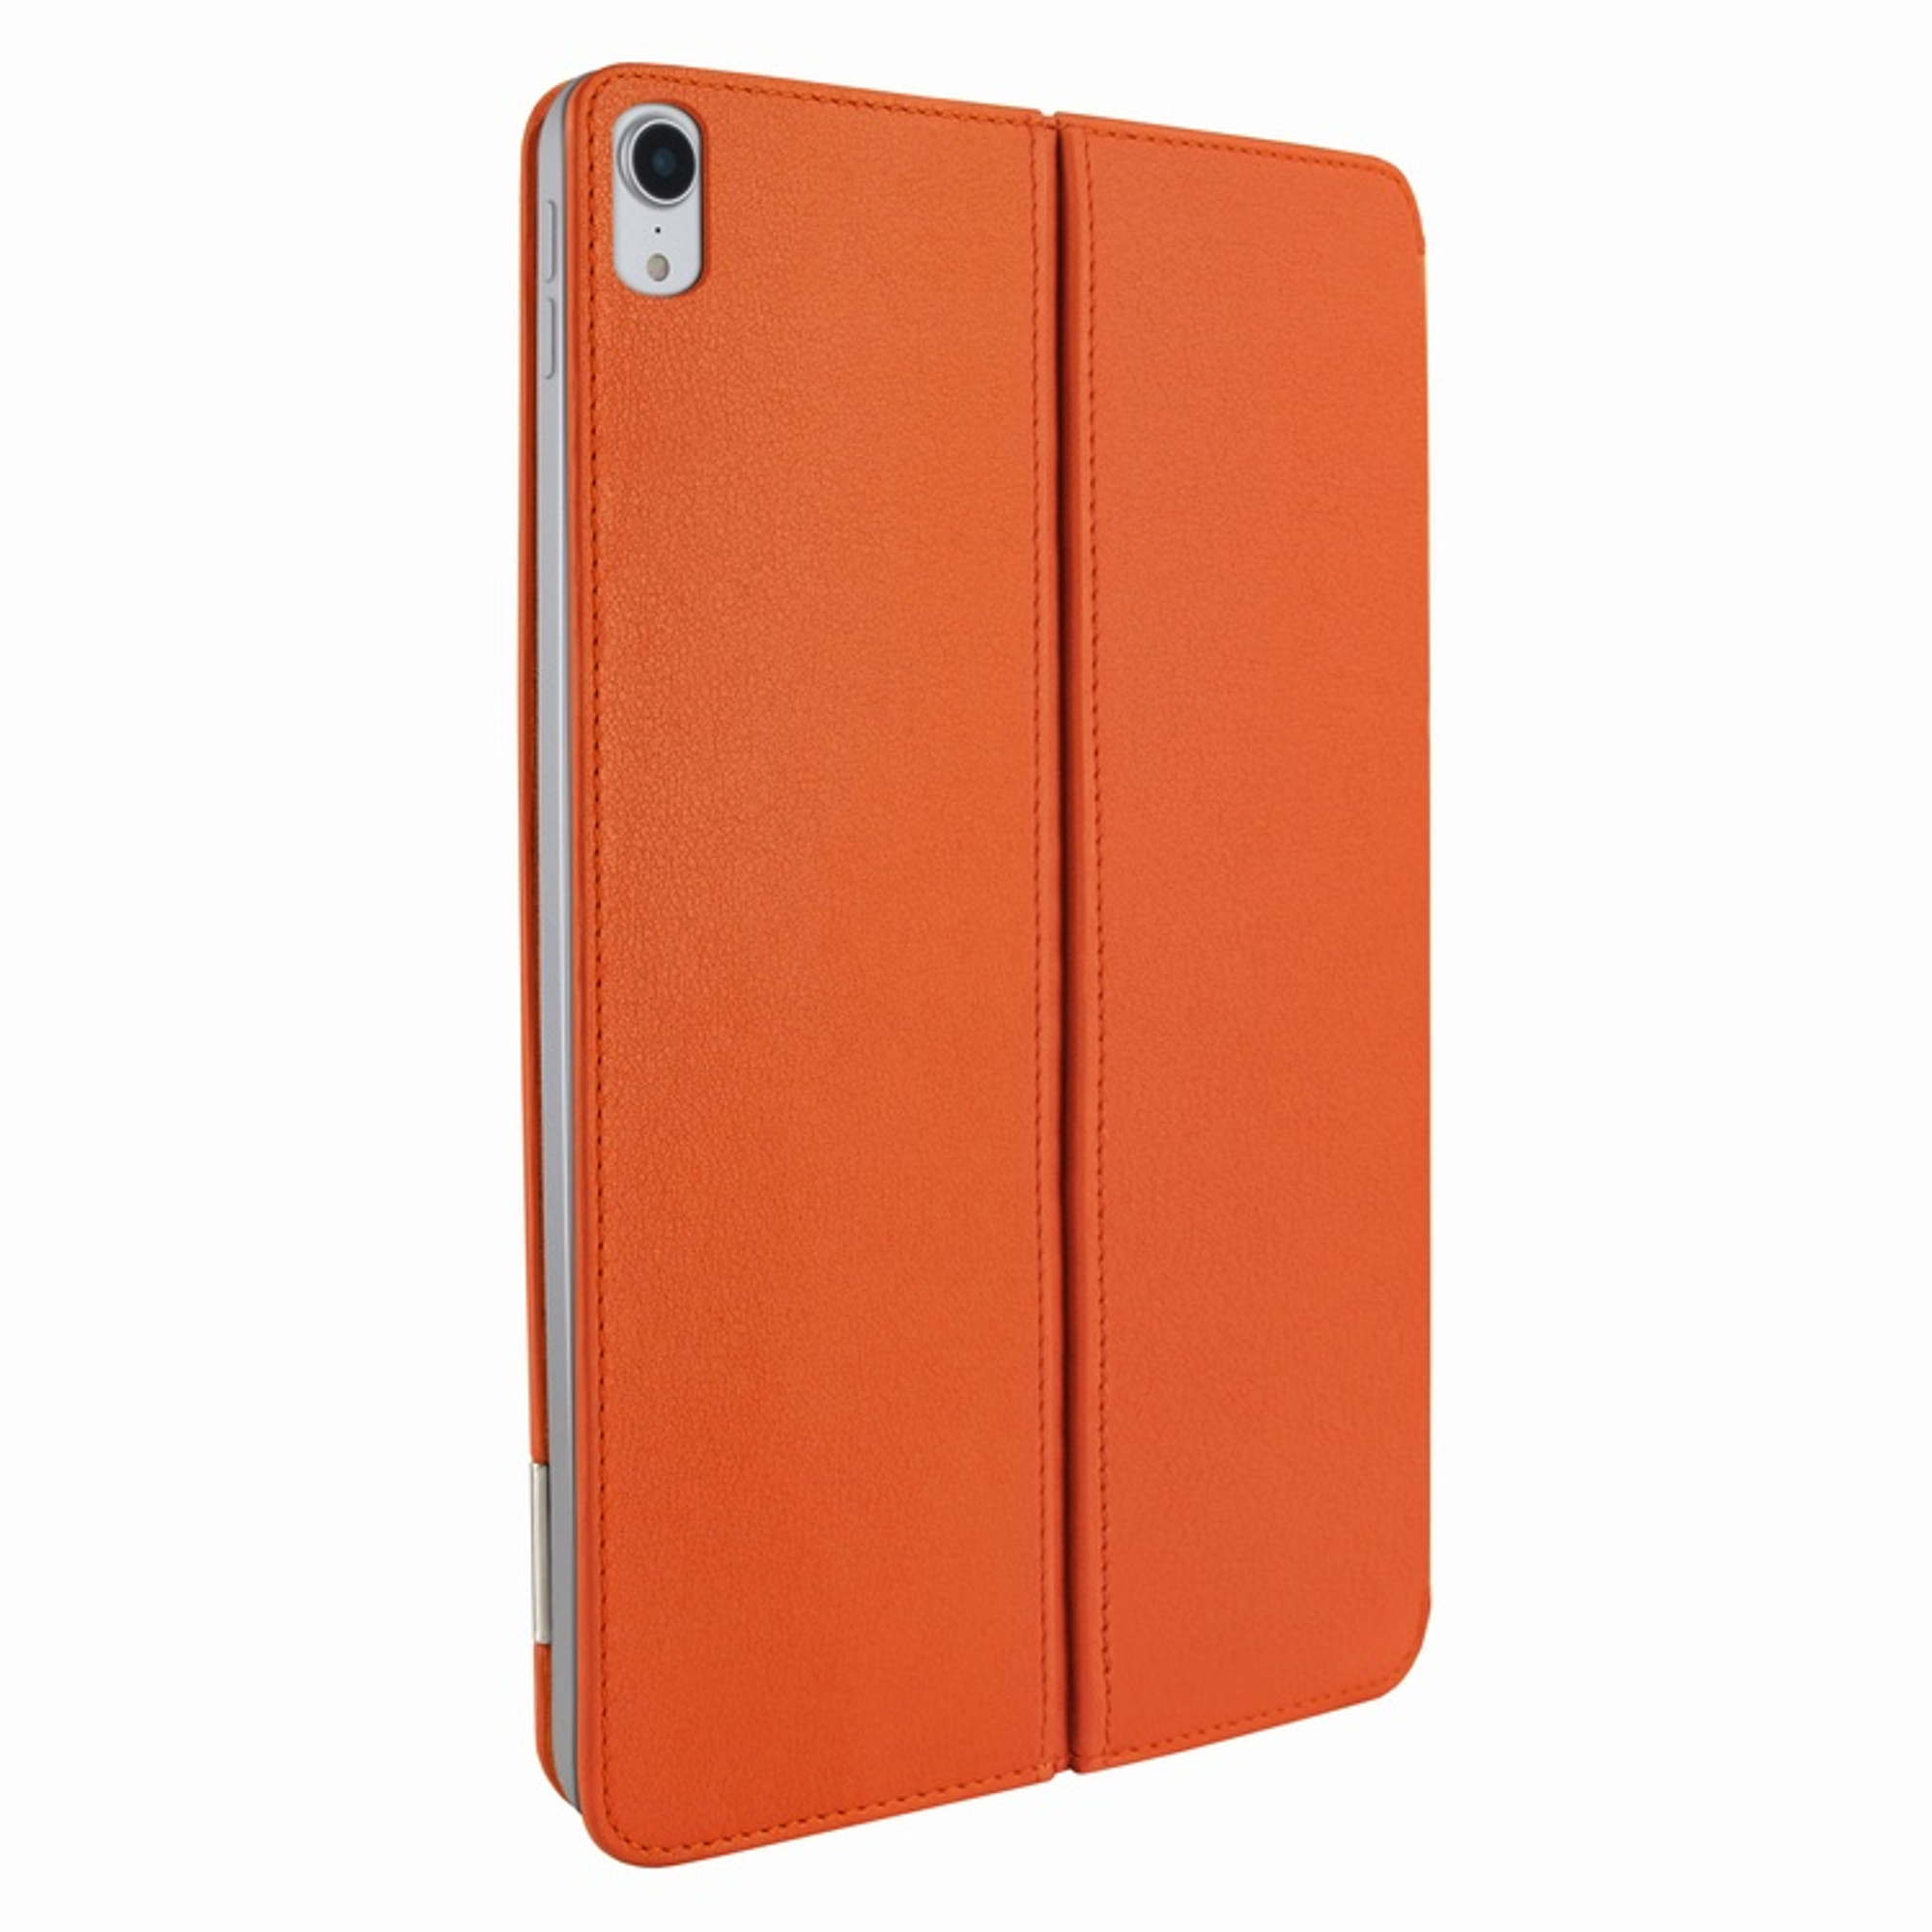 Buy leather iPad case Types + Price - Arad Branding